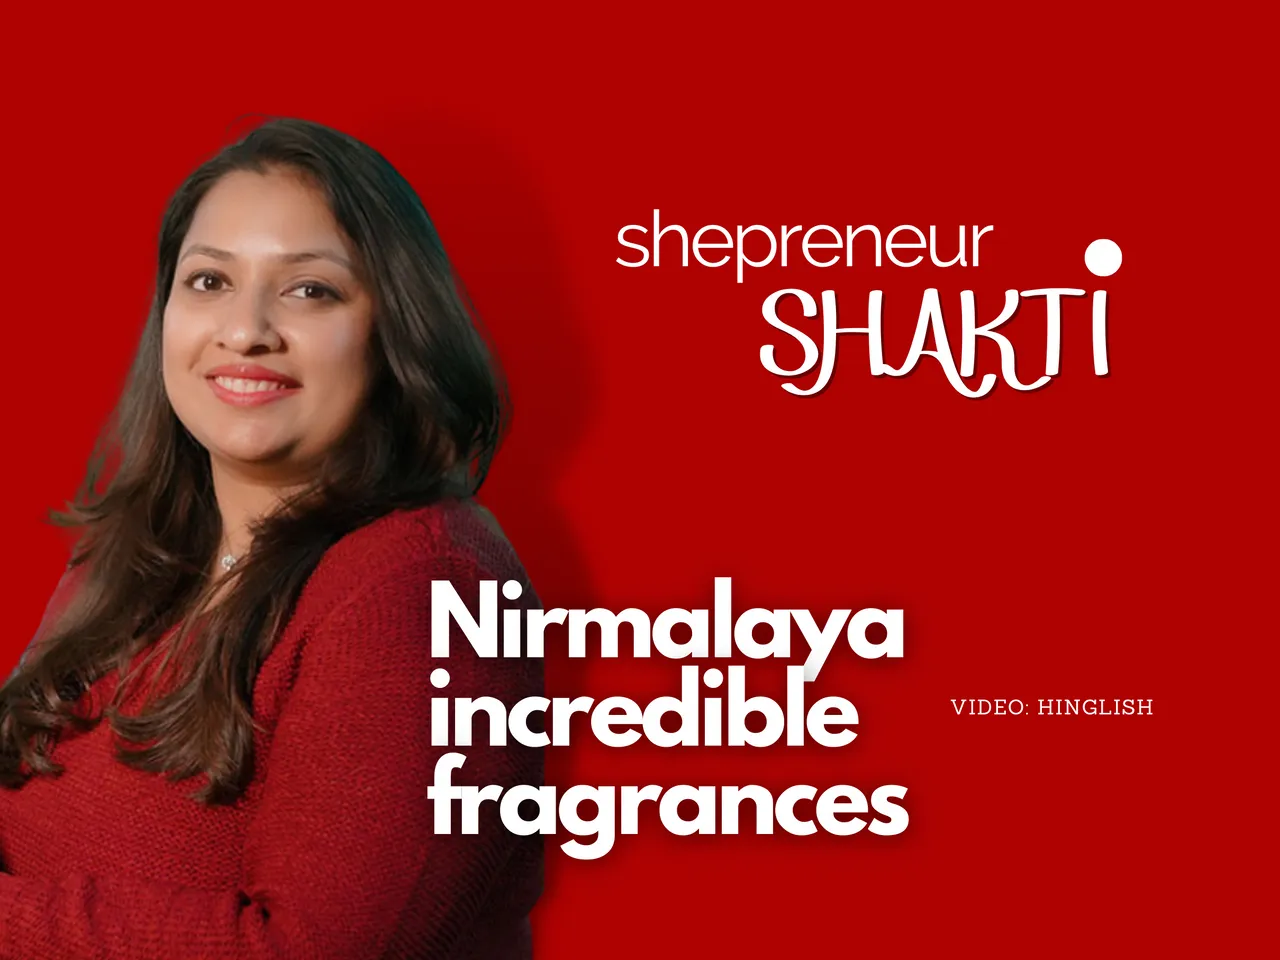 Shepreneur Shakti: The Exquisite Fragrance Of An Entrepreneurial Journey